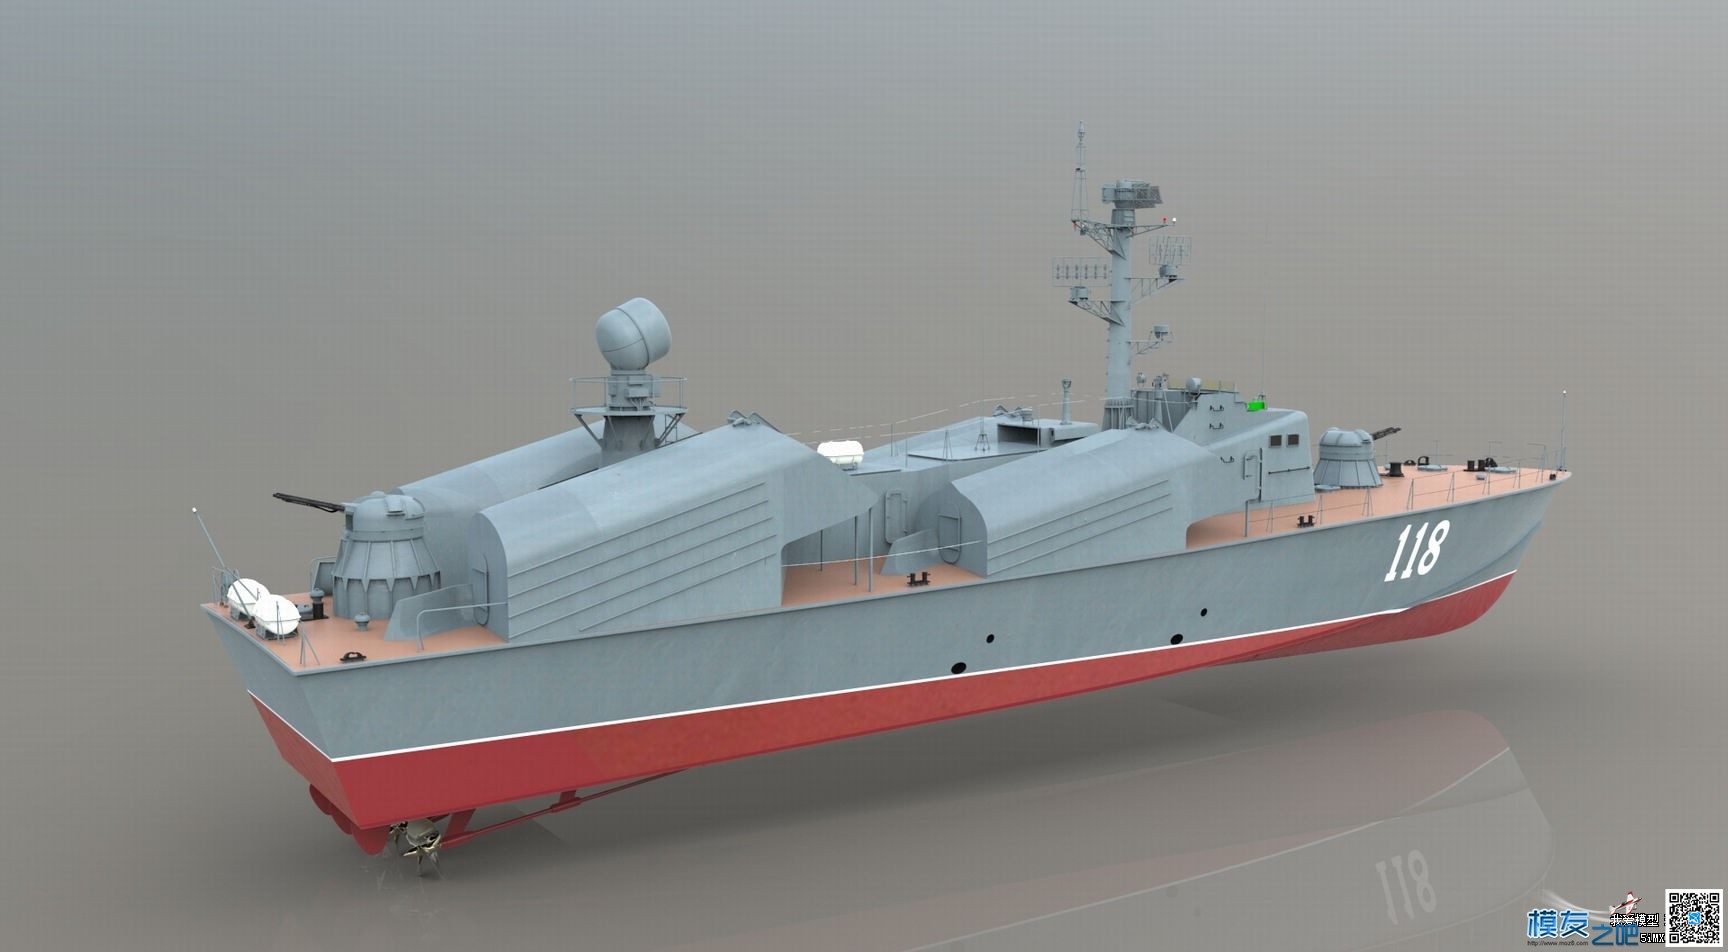 【偶尔飞一次】制作【俄罗斯黄蜂3型导弹艇】模型 图纸 作者:漂洋过海 813 